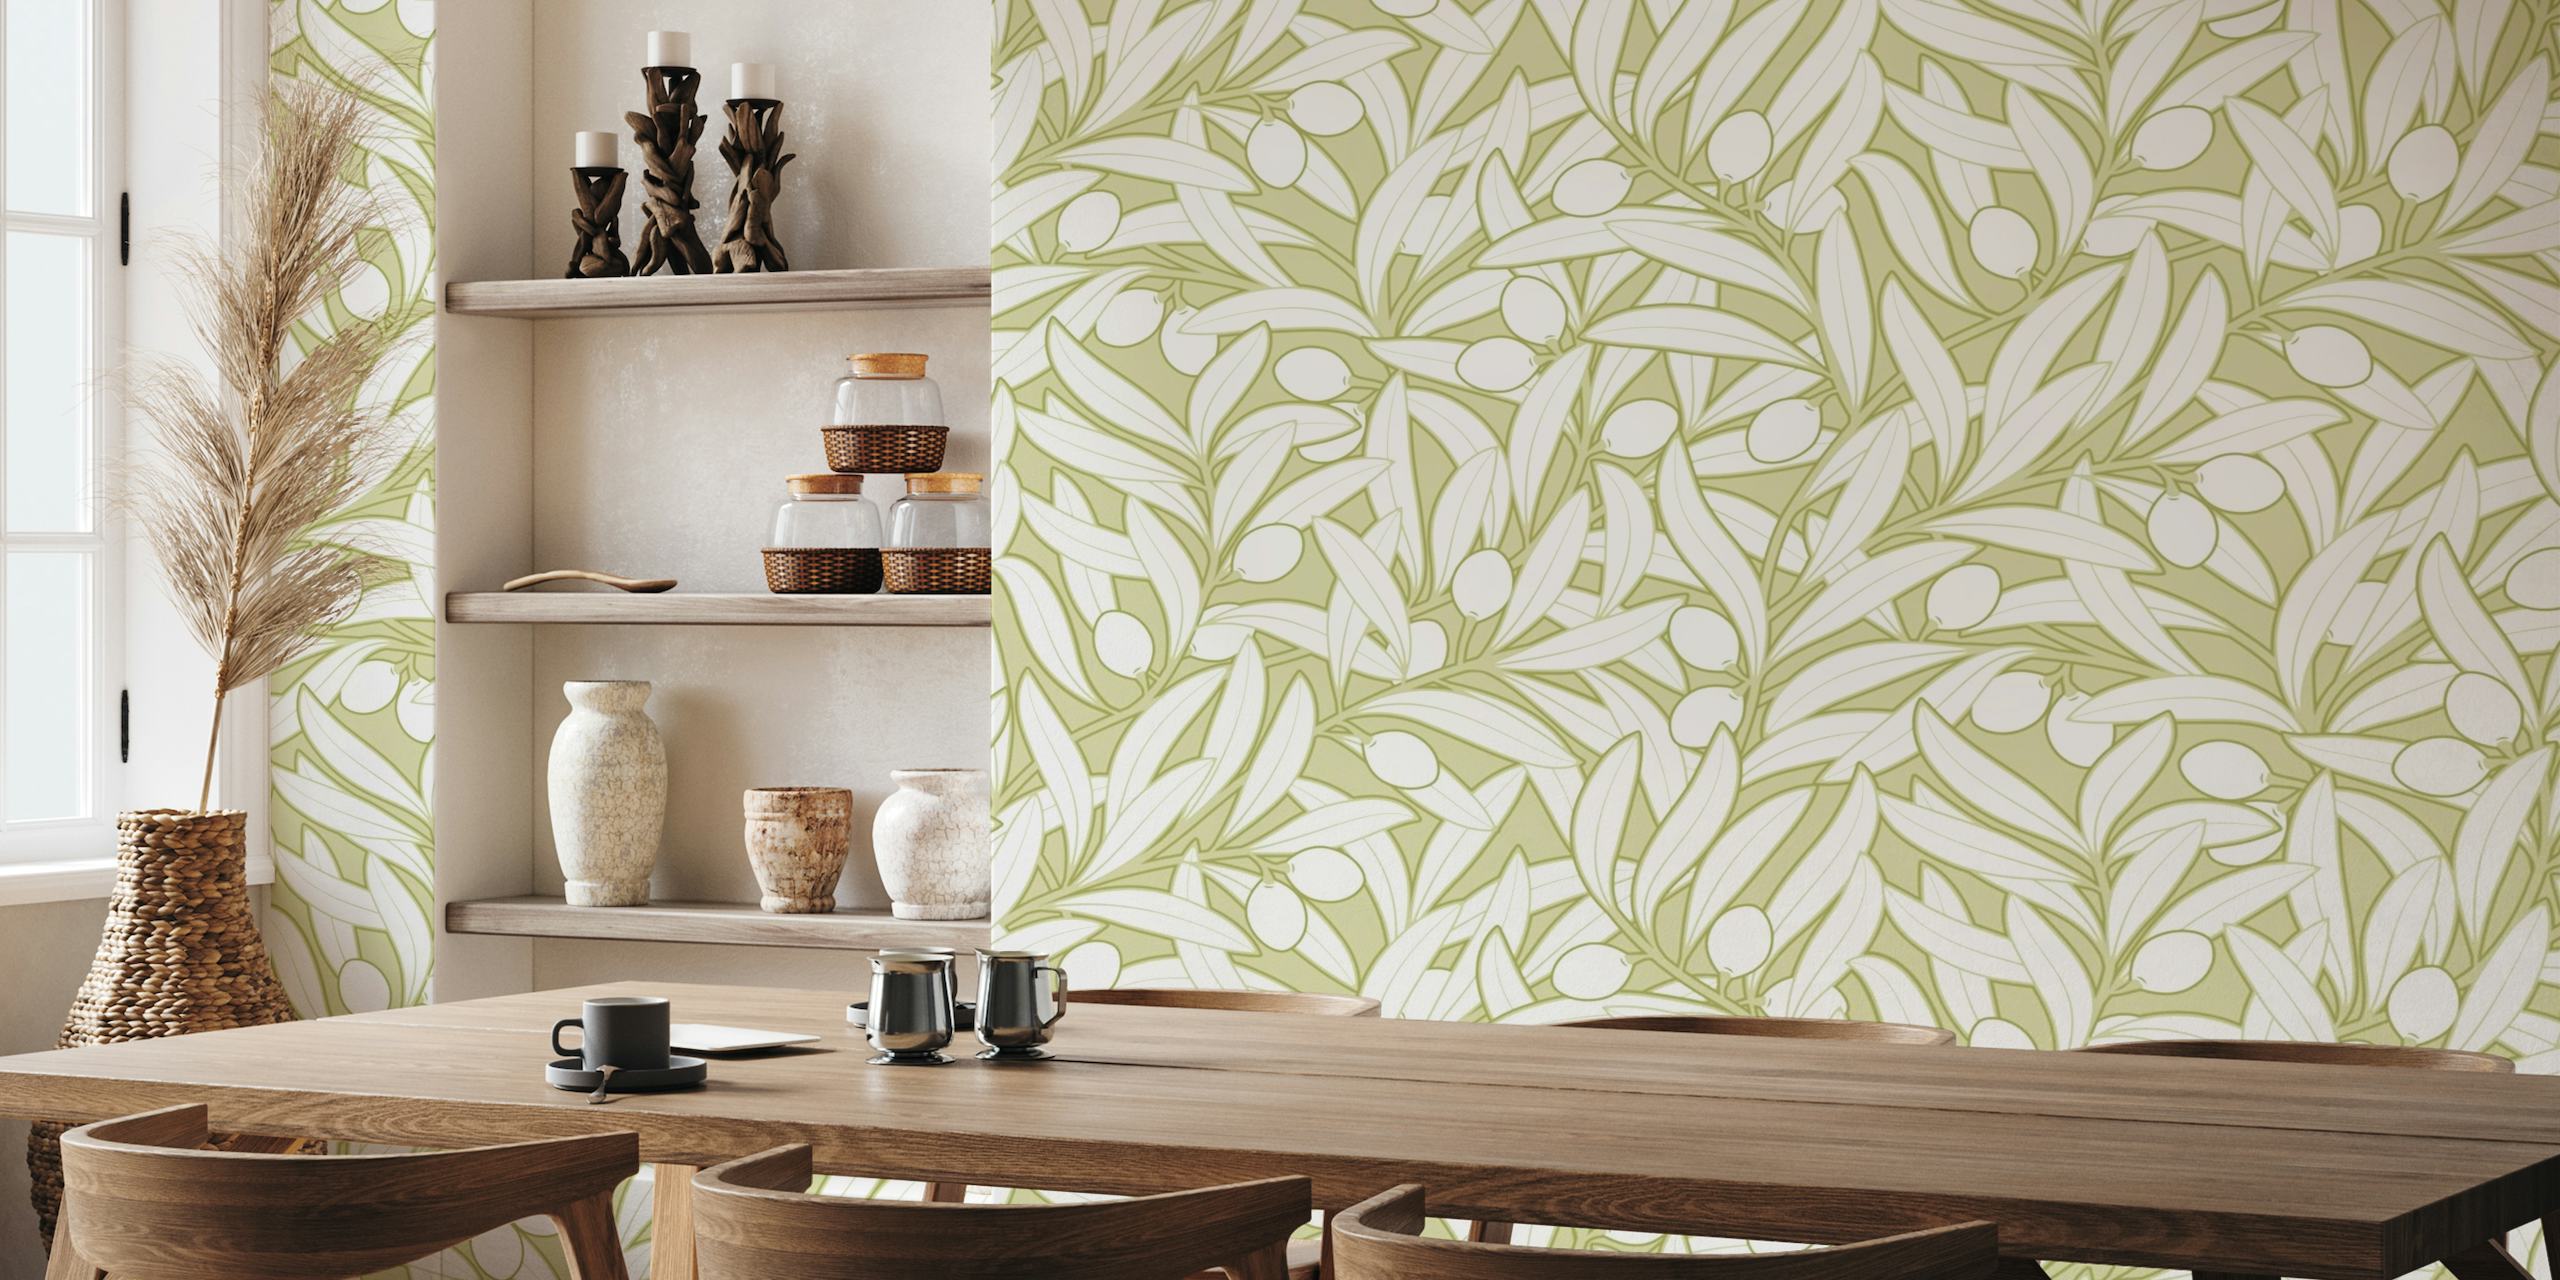 Olives Neutral Botanički zidni mural u mat maslinastozelenoj boji s elegantnim ilustracijama maslinovih grančica